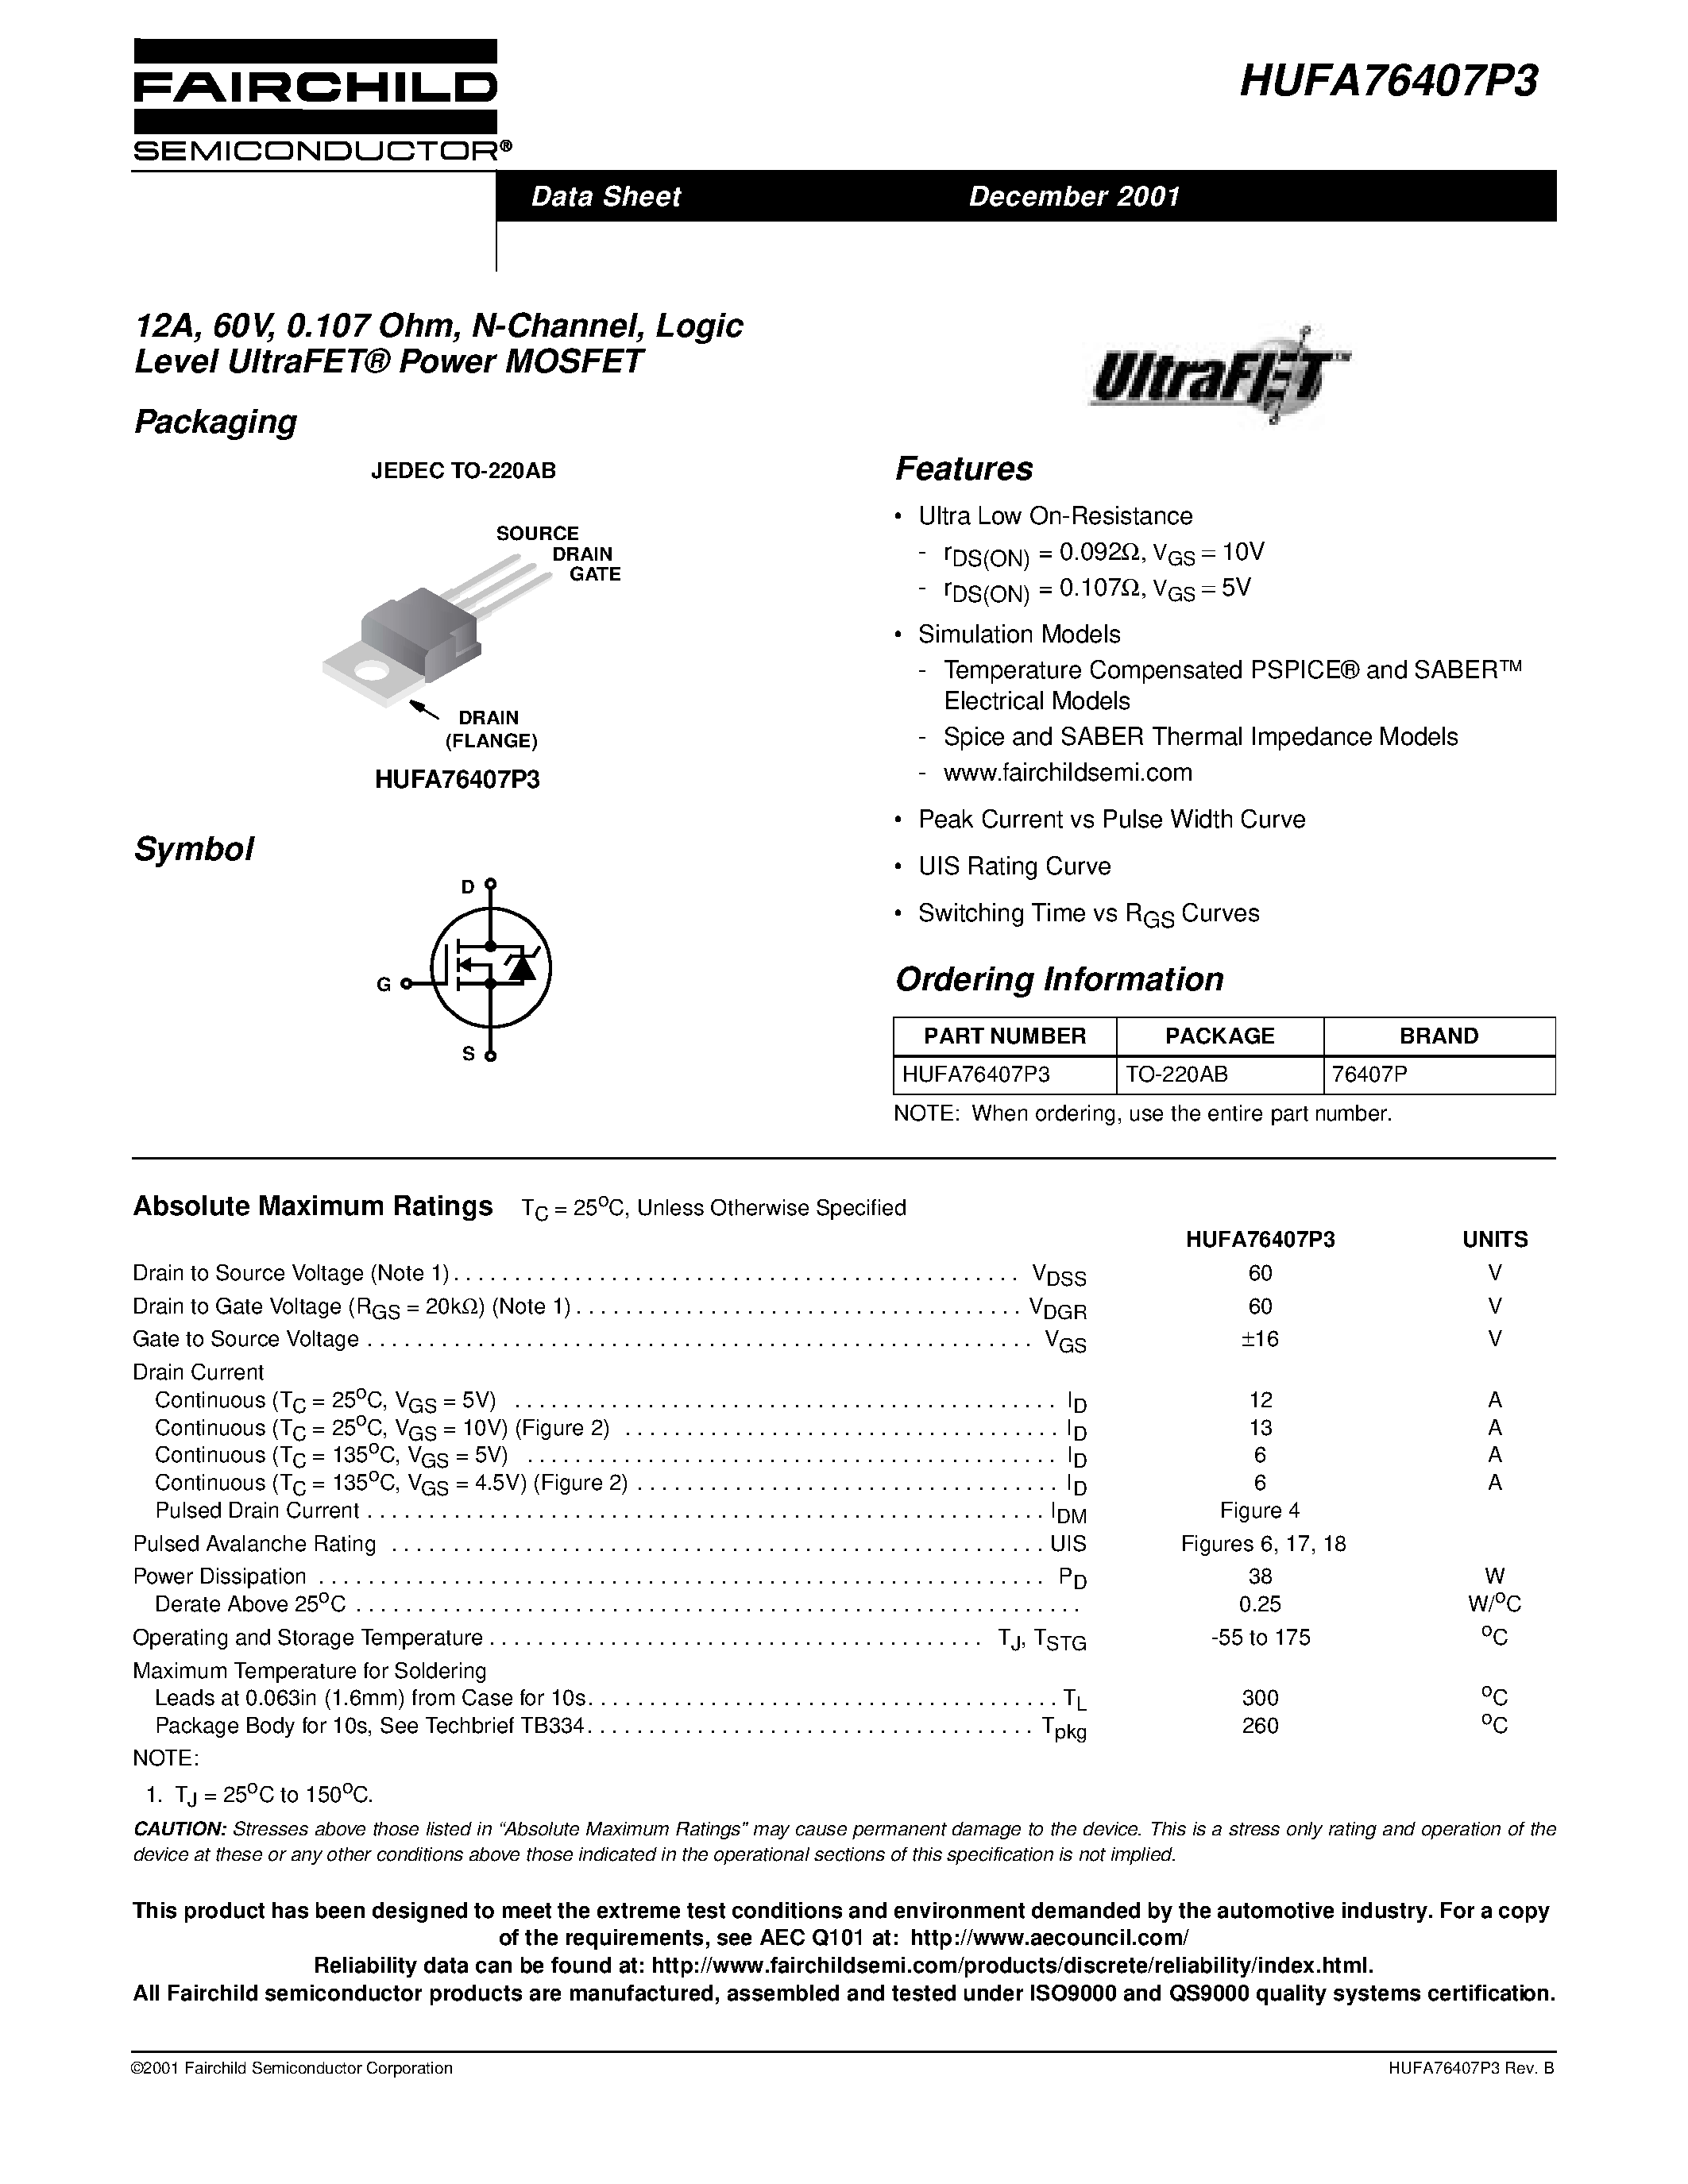 Даташит HUFA76407P3 - 12A/ 60V/ 0.107 Ohm/ N-Channel/ Logic Level UltraFET Power MOSFET страница 1